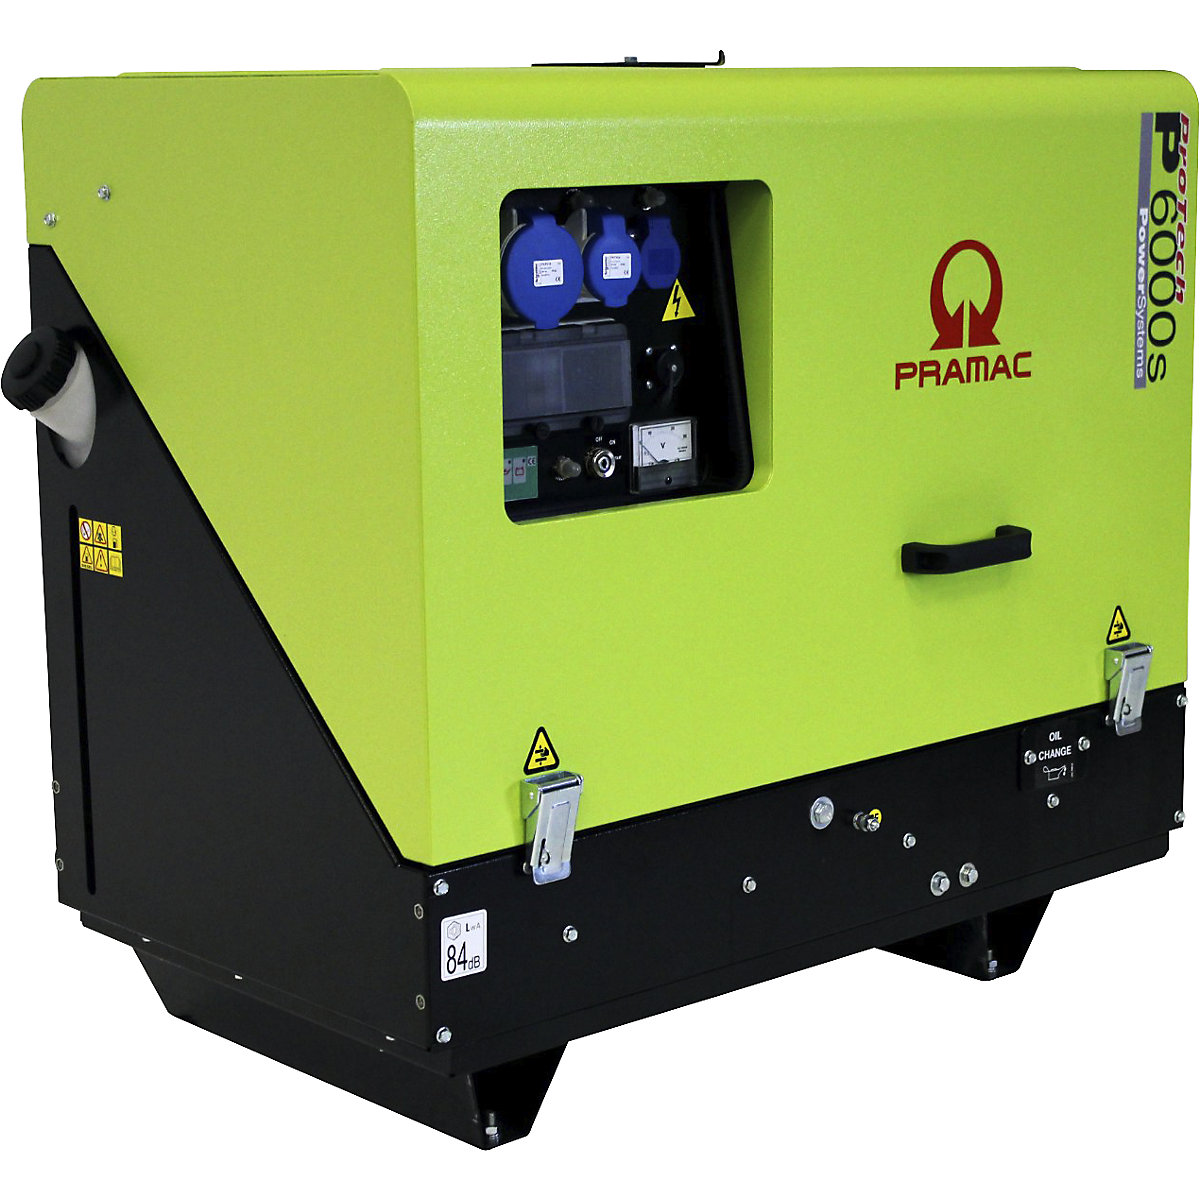 P series power generator, diesel, 230 V - Pramac